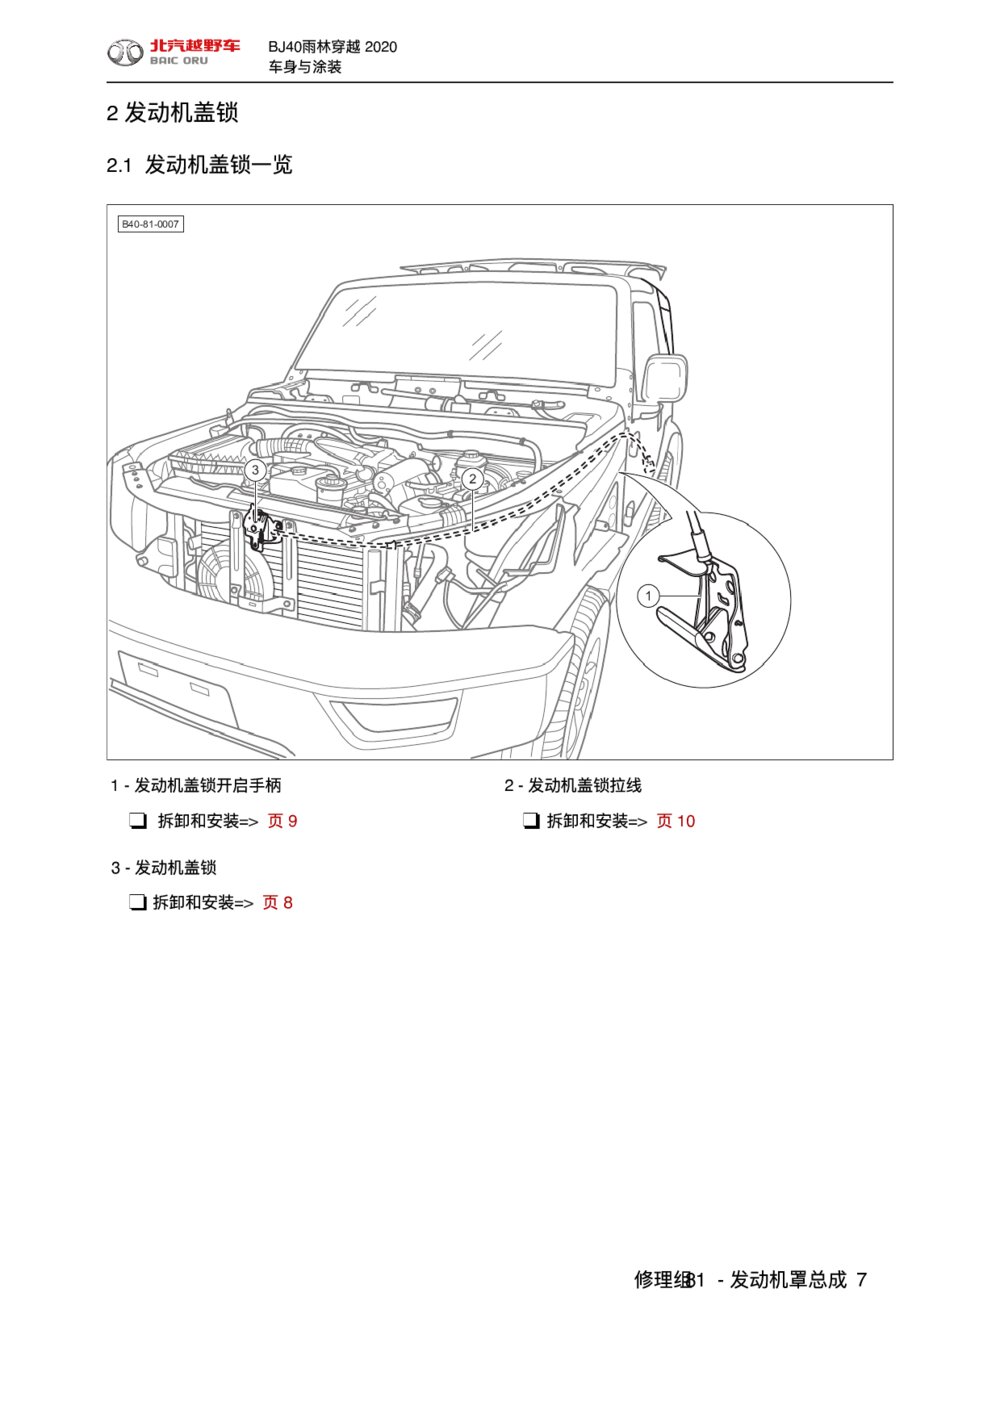 2020款北京BJ40发动机罩总成发动机盖锁拆装手册